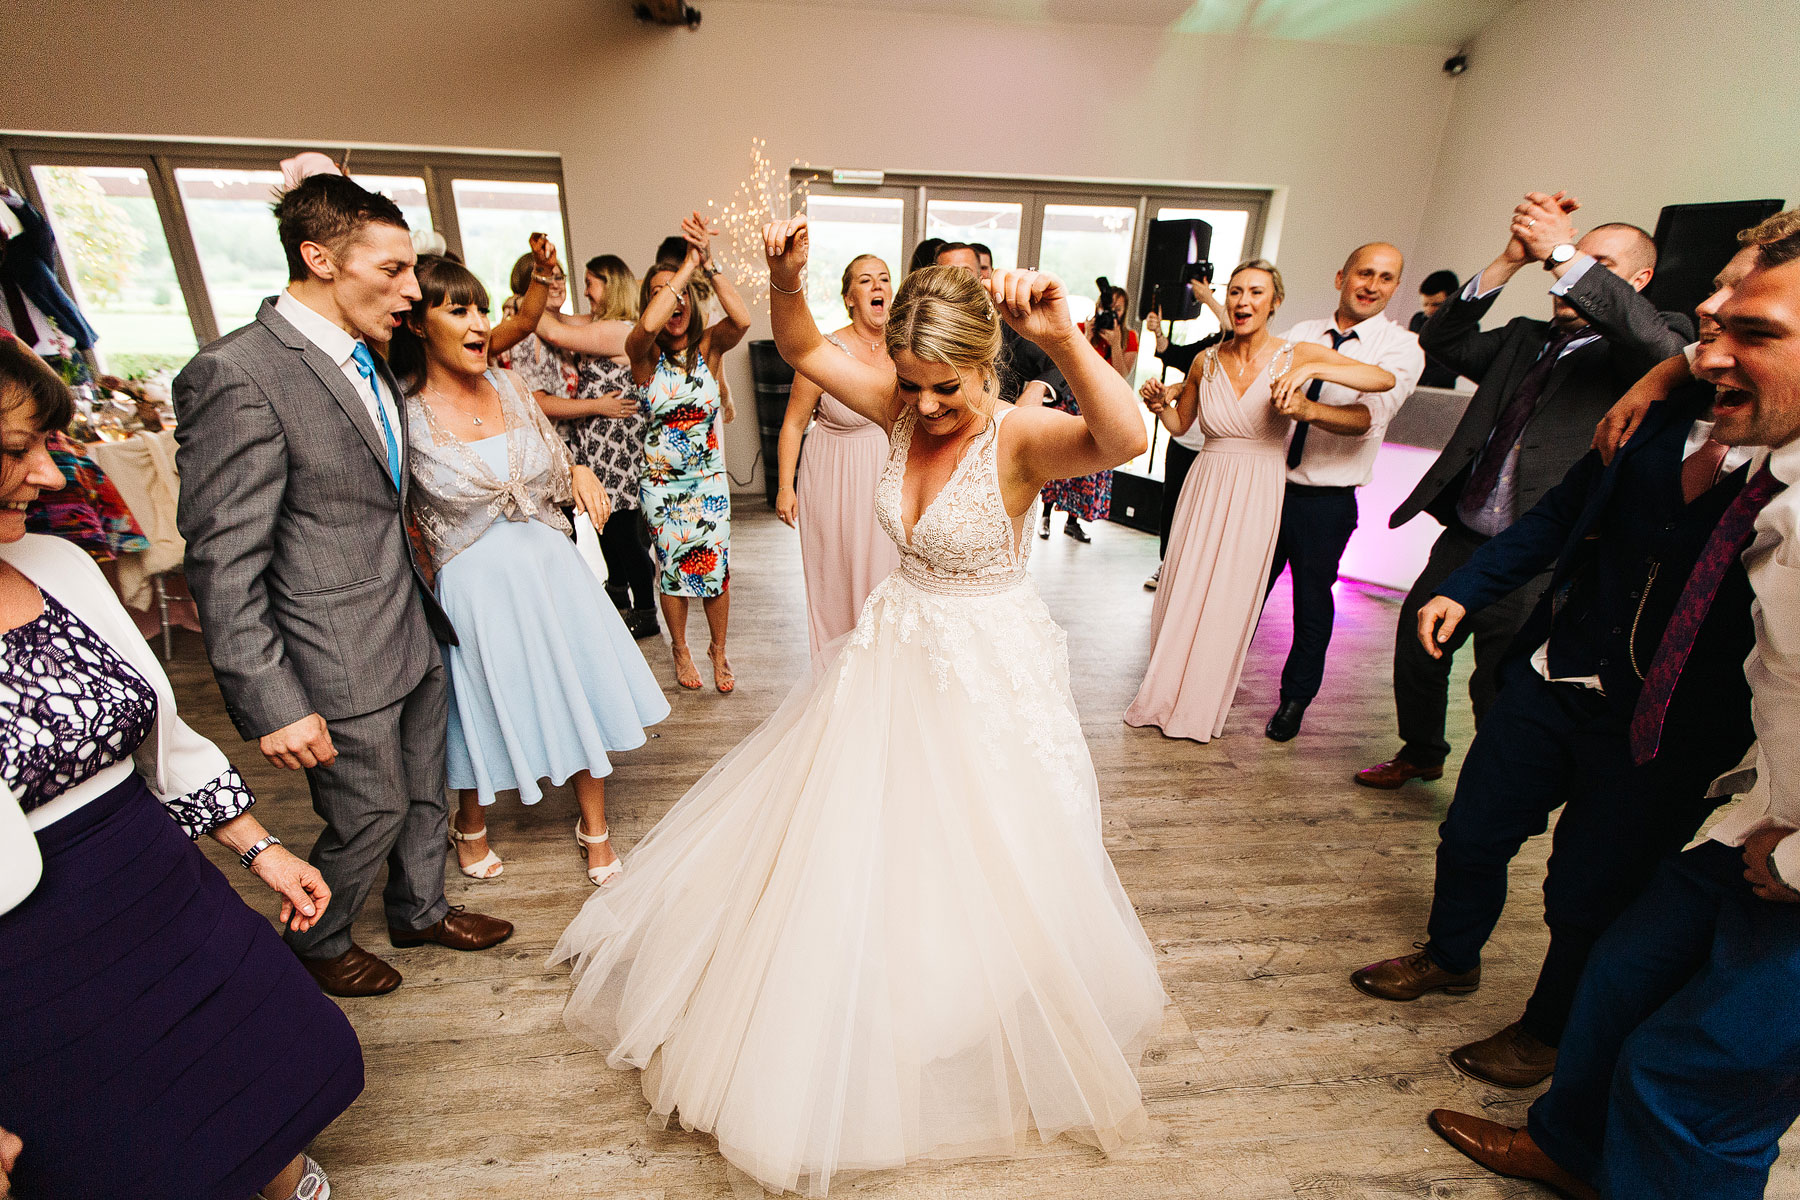 happ bride dancing at yorkshire wedding barn